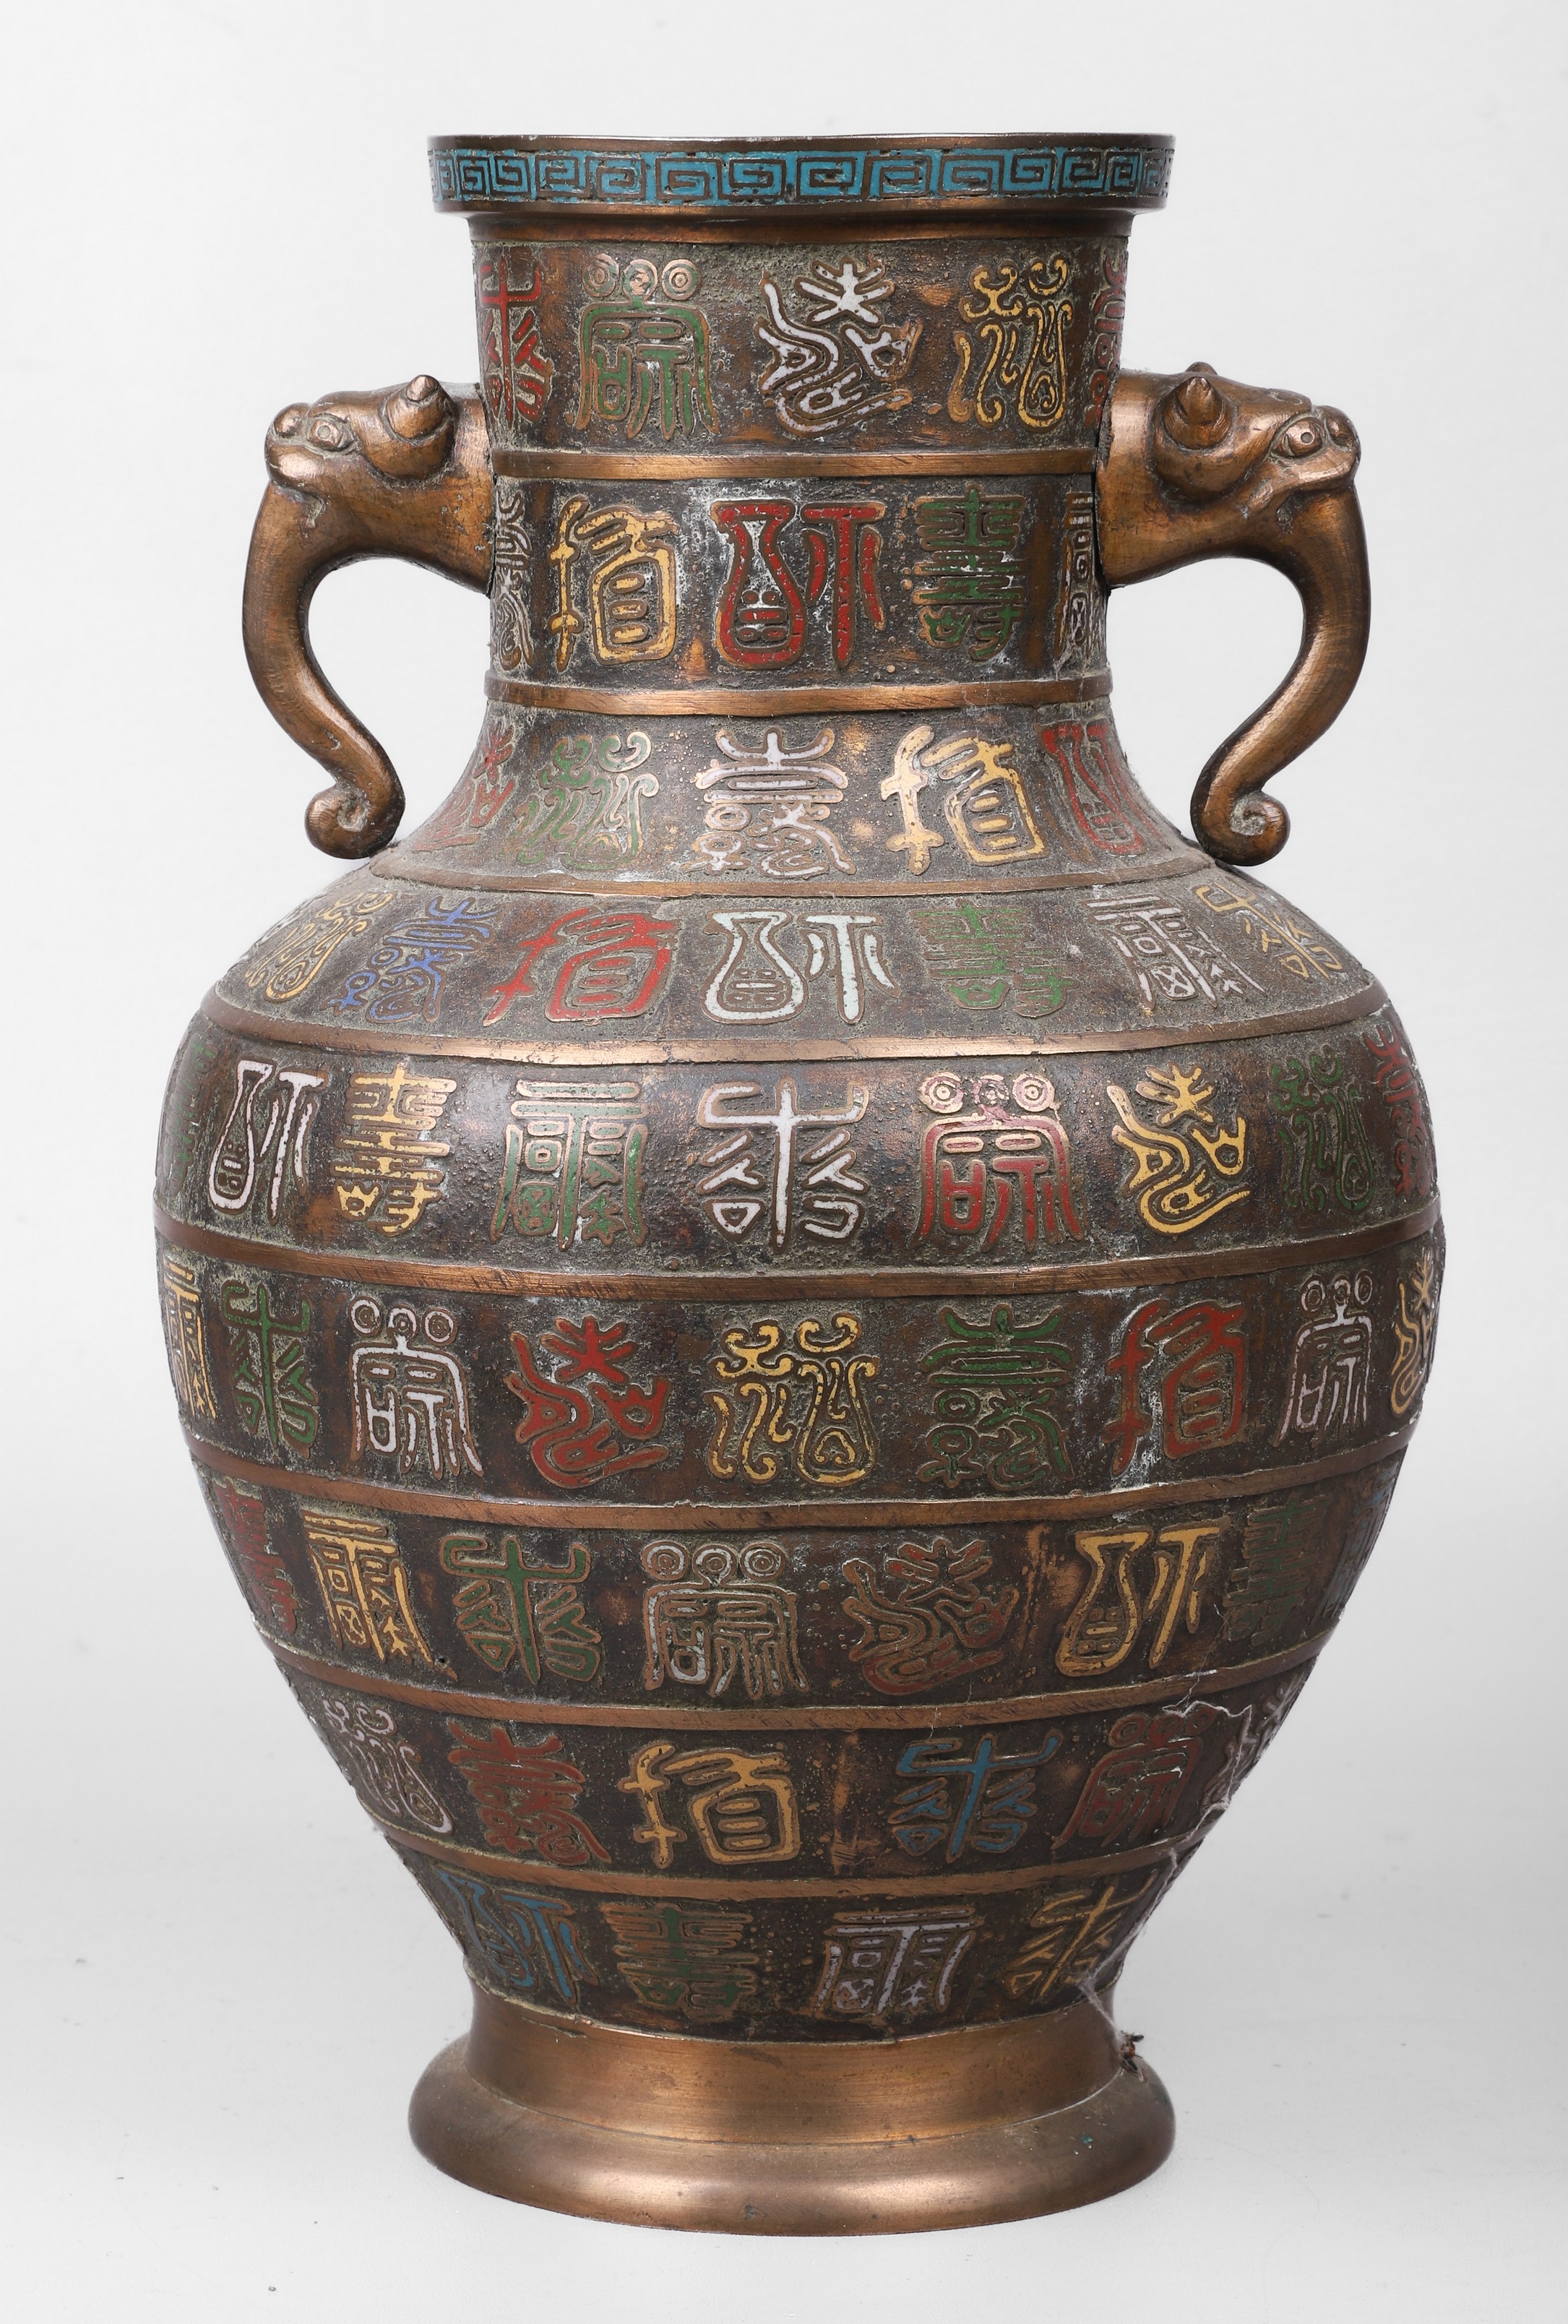 Japanese bronze vase enamel embossed 2e08ae